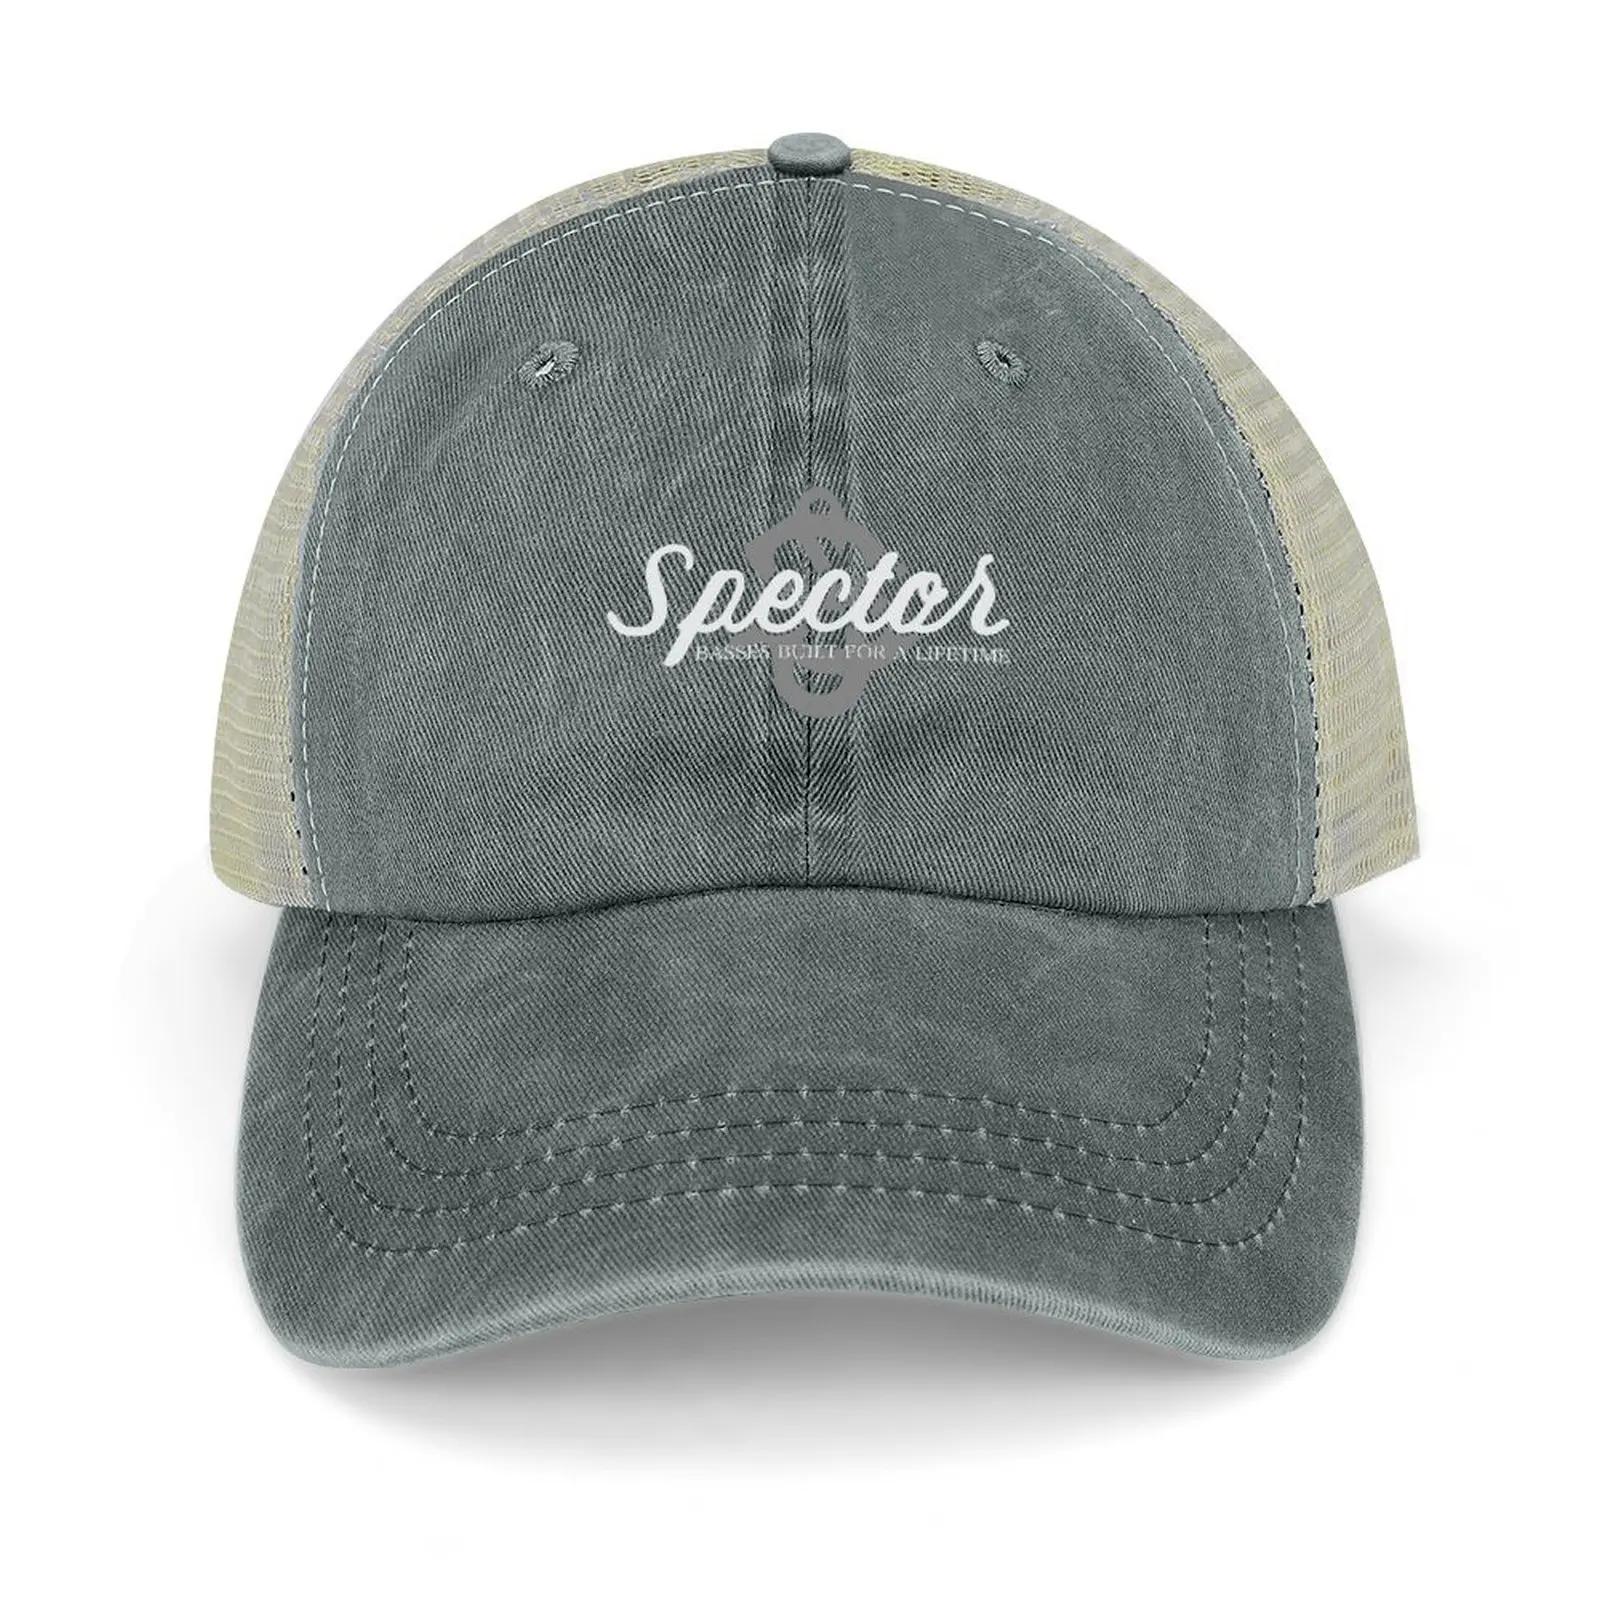 스펙터 베이스 카우보이 모자, 럭셔리 브랜드 키즈 모자, 남녀 야구 모자